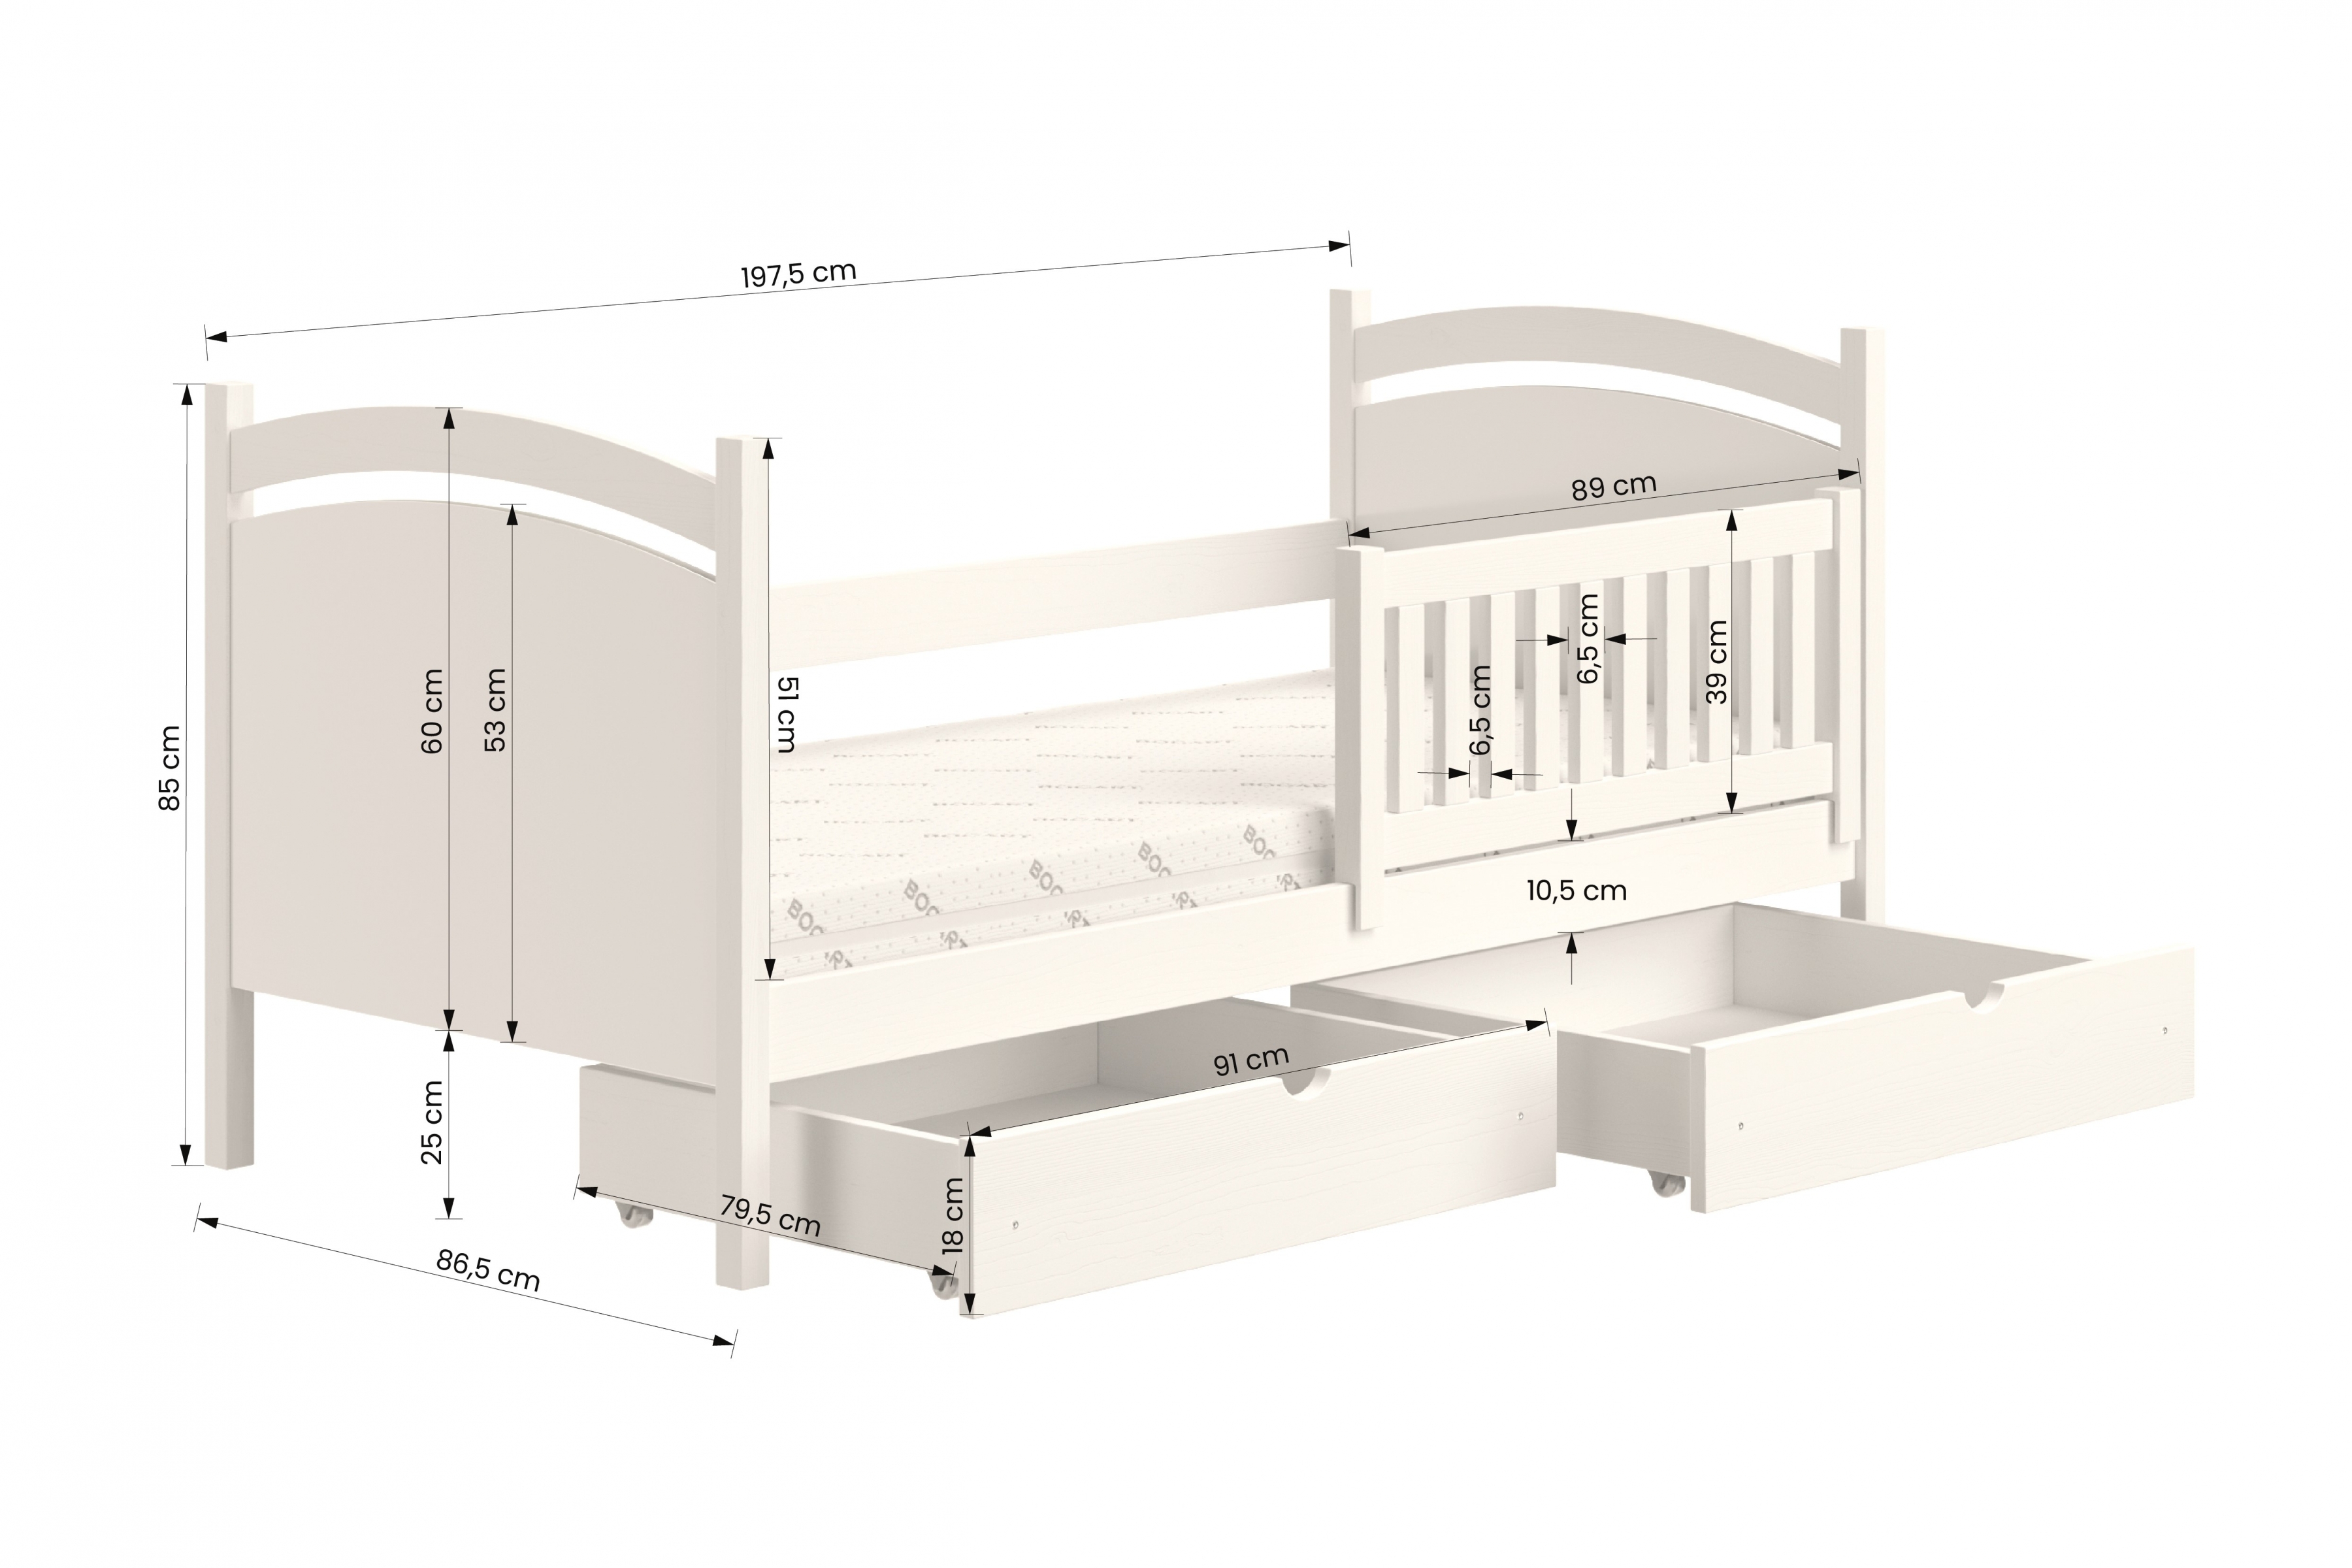 Detská posteľ s tabuľou Amely - Farba Biely, rozmer 80x190 Posteľ dzieciece z tablica suchoscieralna Amely - Rozmery